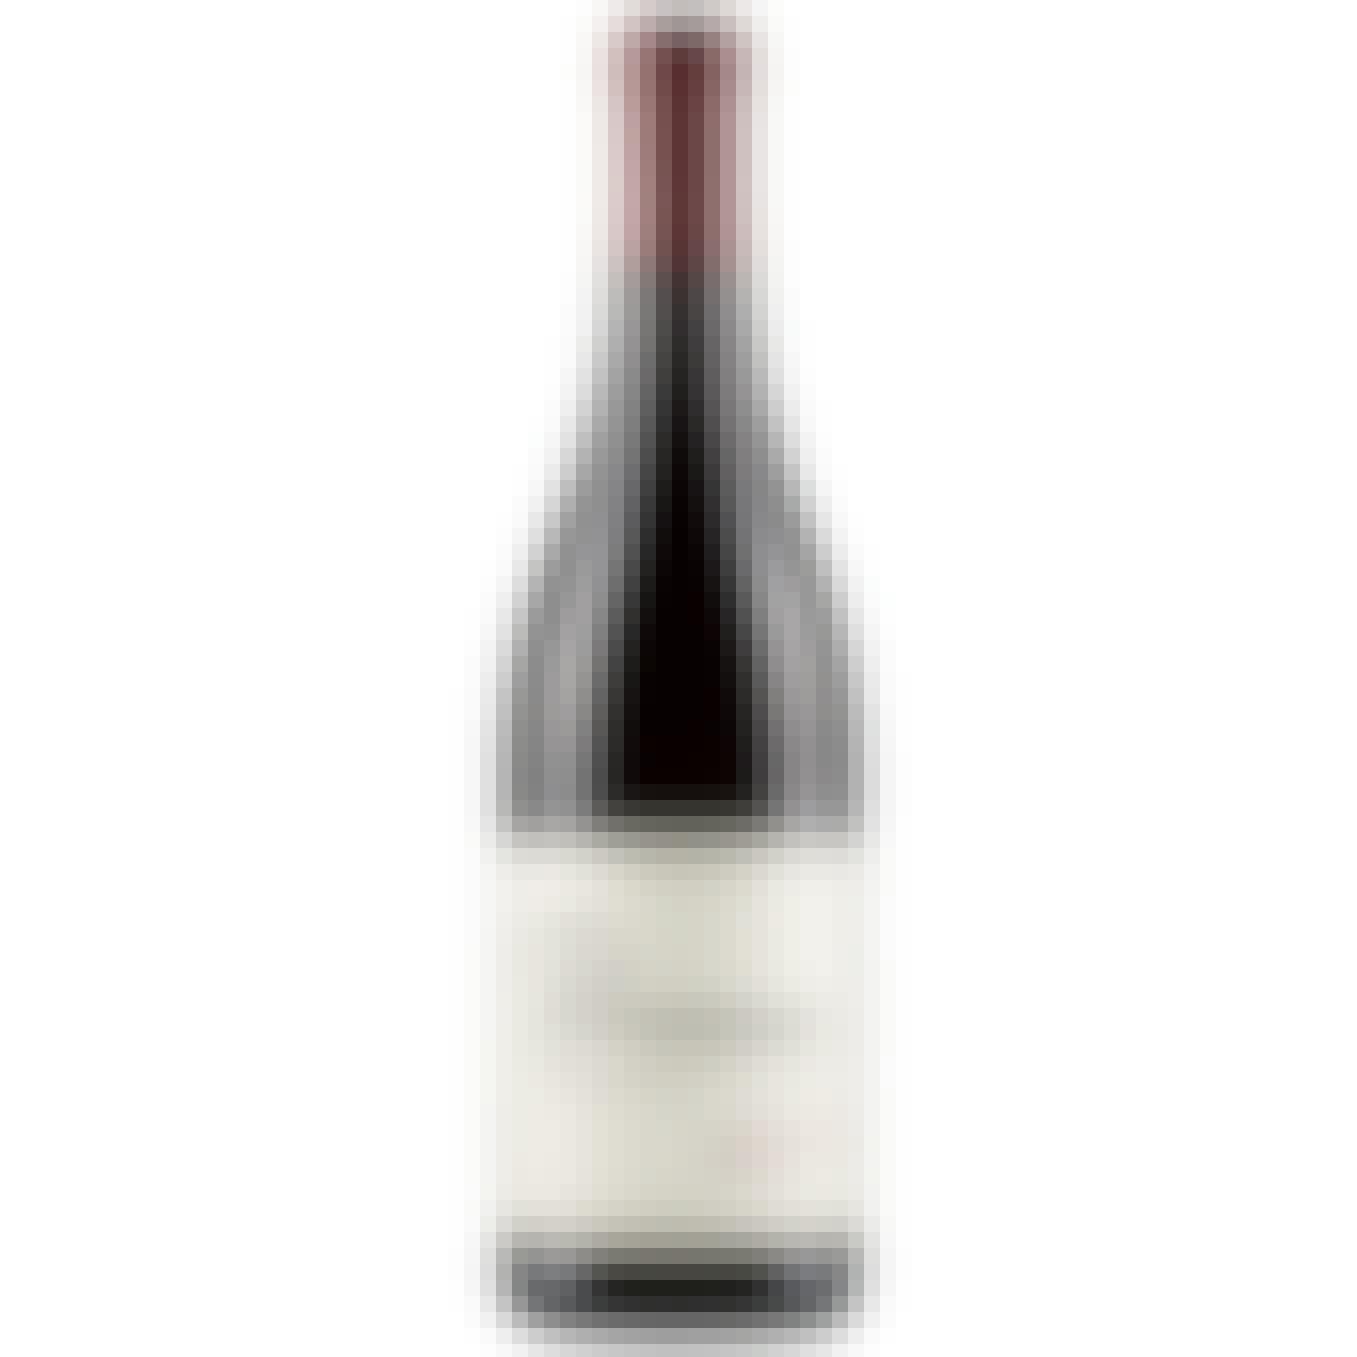 Primarius Pinot Noir 750ml